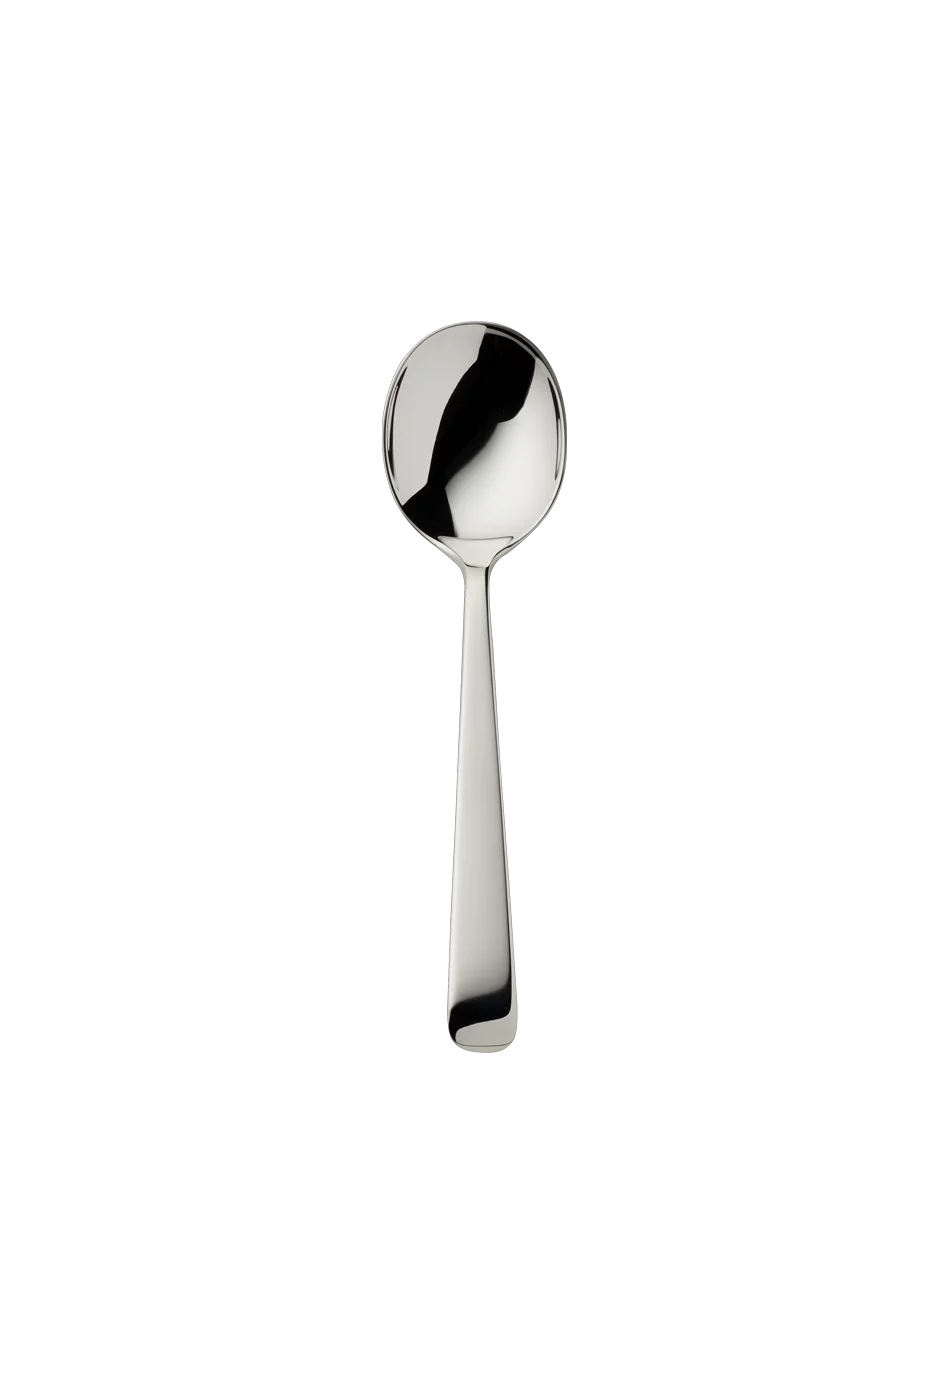 Alta Children's Spoon (150g massive silverplated)